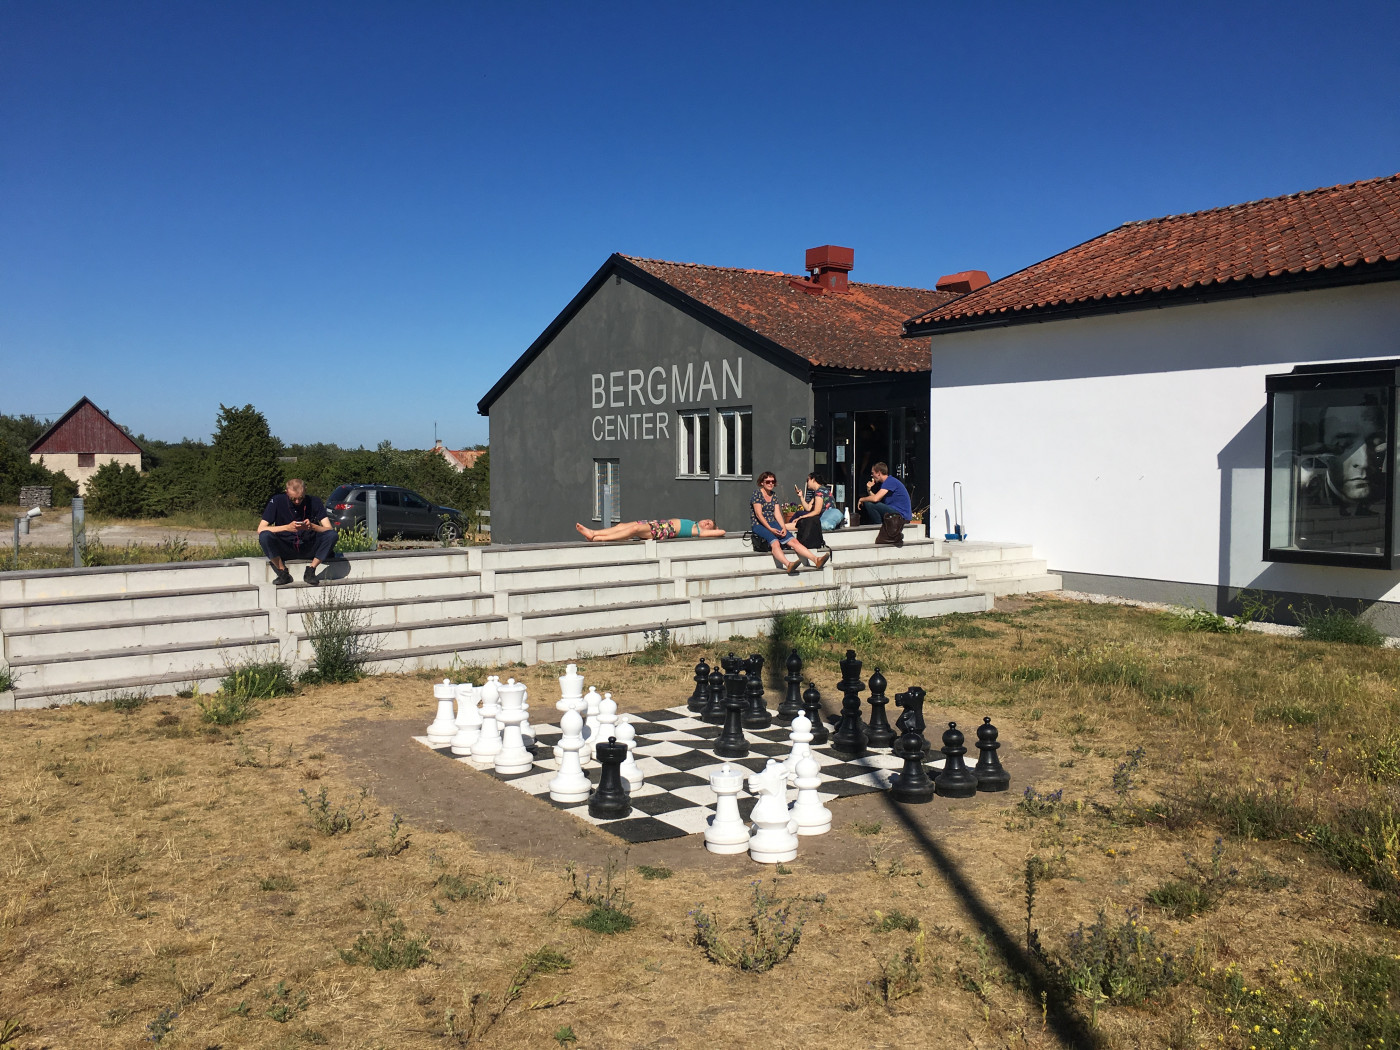 Foto från Bergmancenter på Fårö. Ungdomar sitter i solen och vilar. Ett stort schackspel är i förgrunden. 